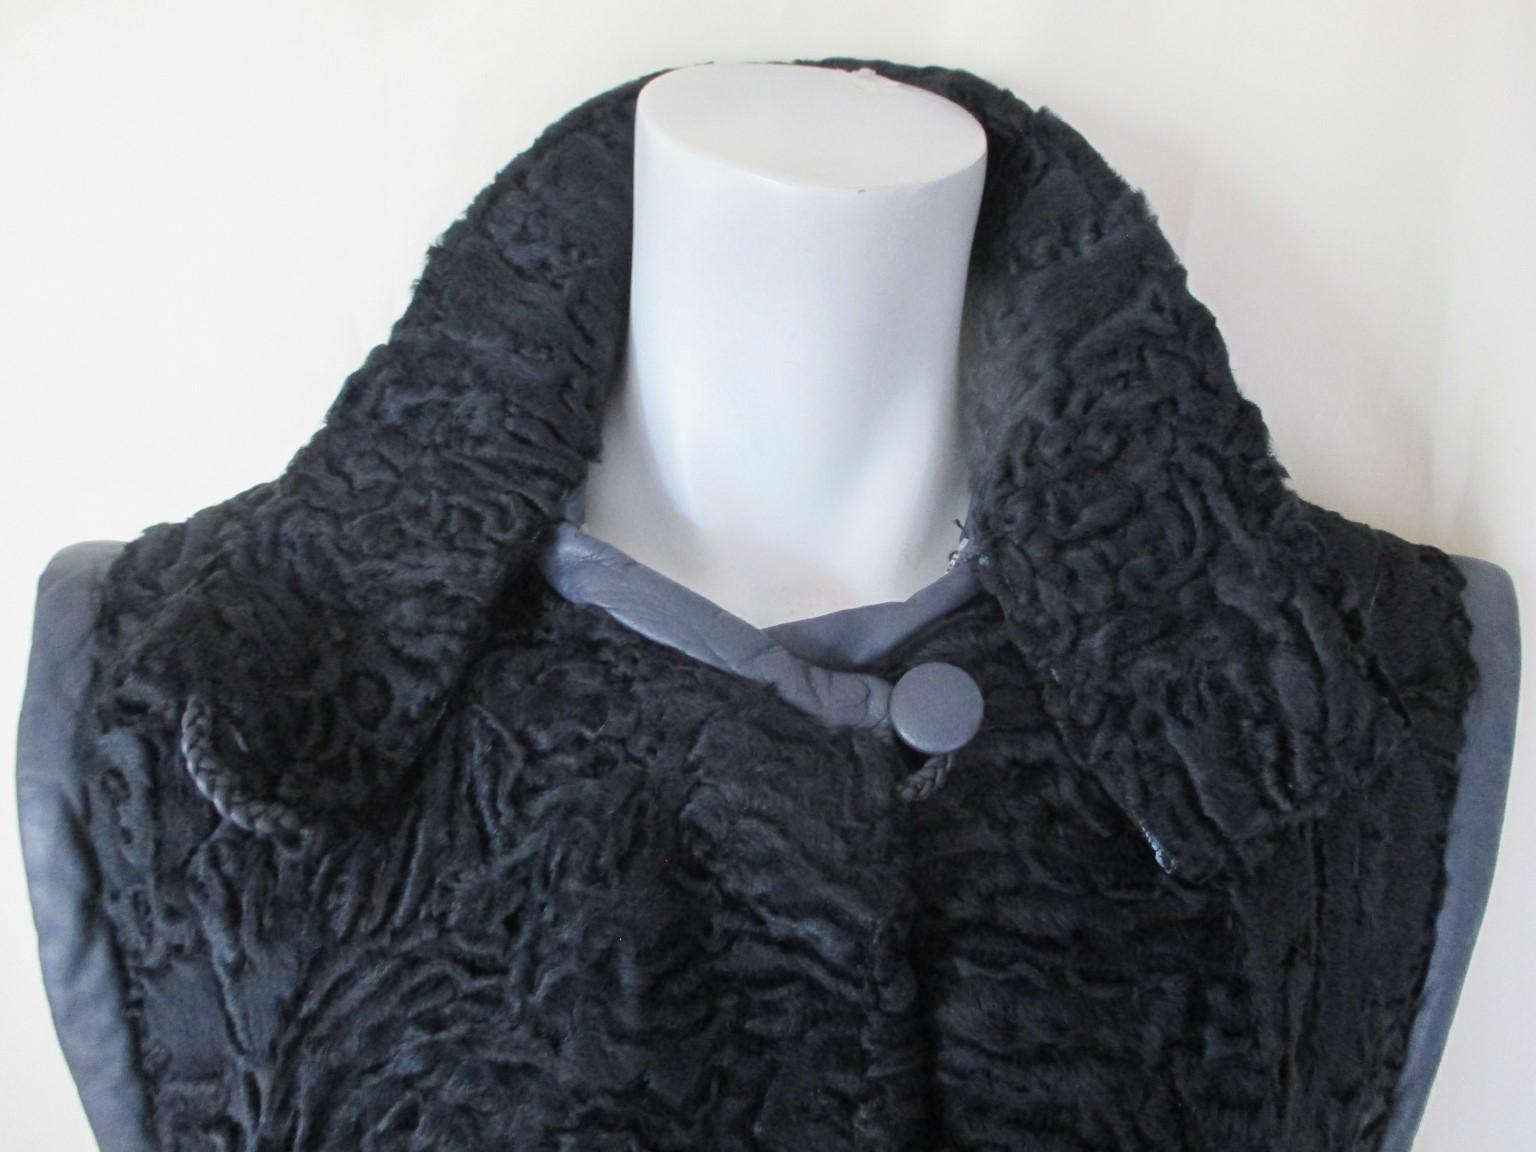 Dieser Mantel ist aus persischem Lammfell gefertigt und hat abnehmbare Lederärmel, die mit einem Reißverschluss geschlossen werden.
Farbe: Blau (gefärbt)
Sie hat 2 Samttaschen, 2 Knöpfe am Kragen und 3 Verschlusshaken.
größe ist etwa Medium/Large